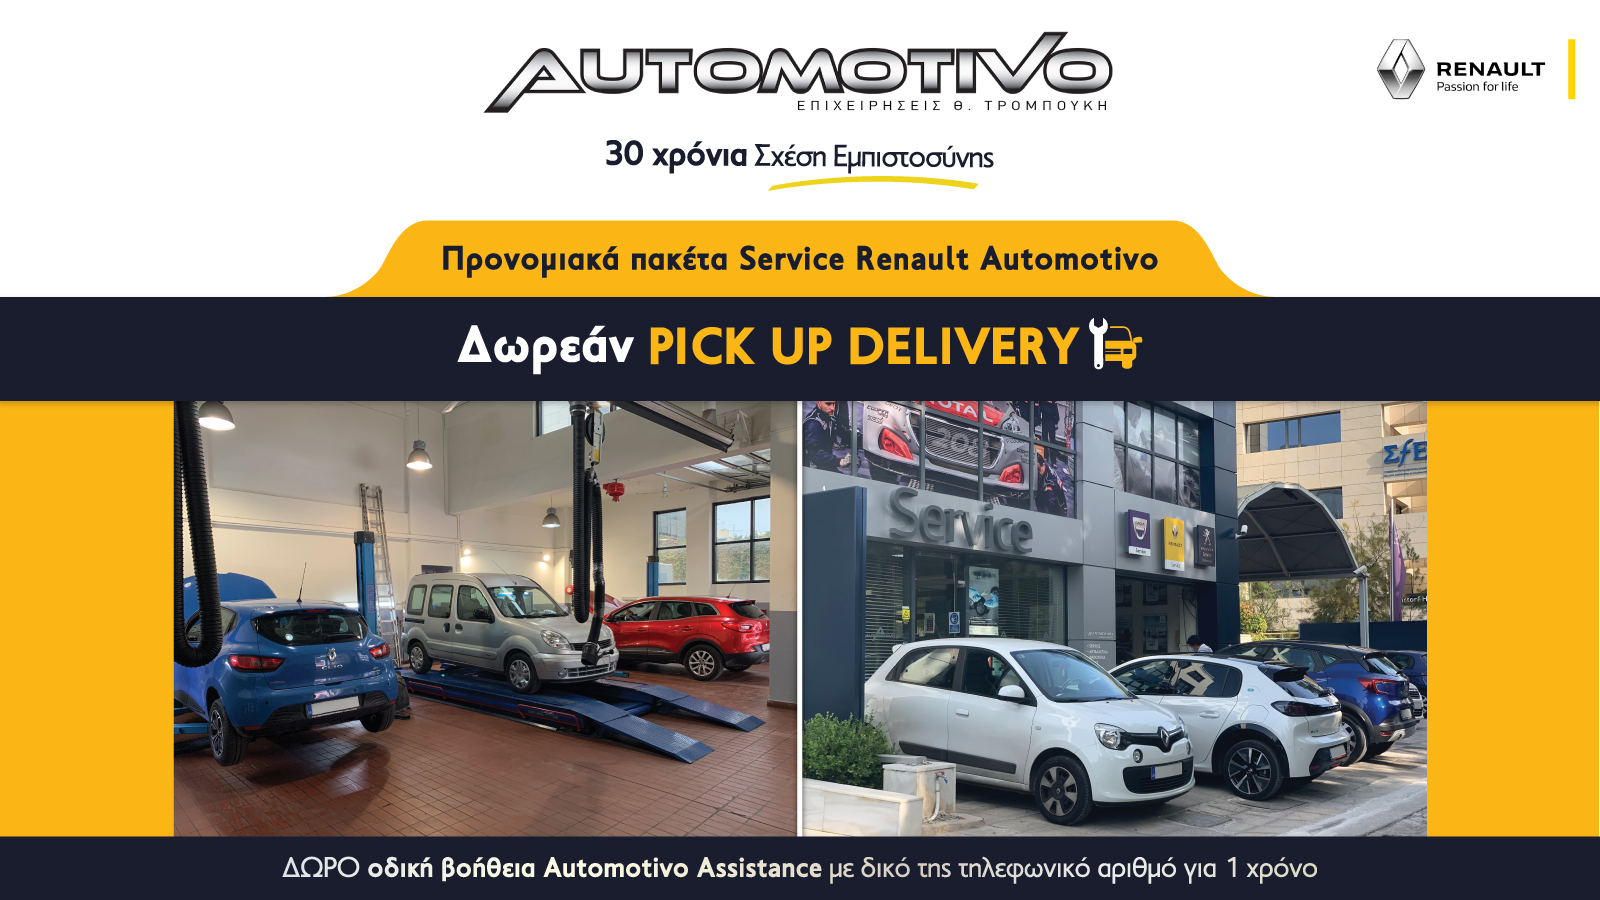 Προνομιακά Πακέτα Service Renault, με την Εγγύηση της Automotivo!